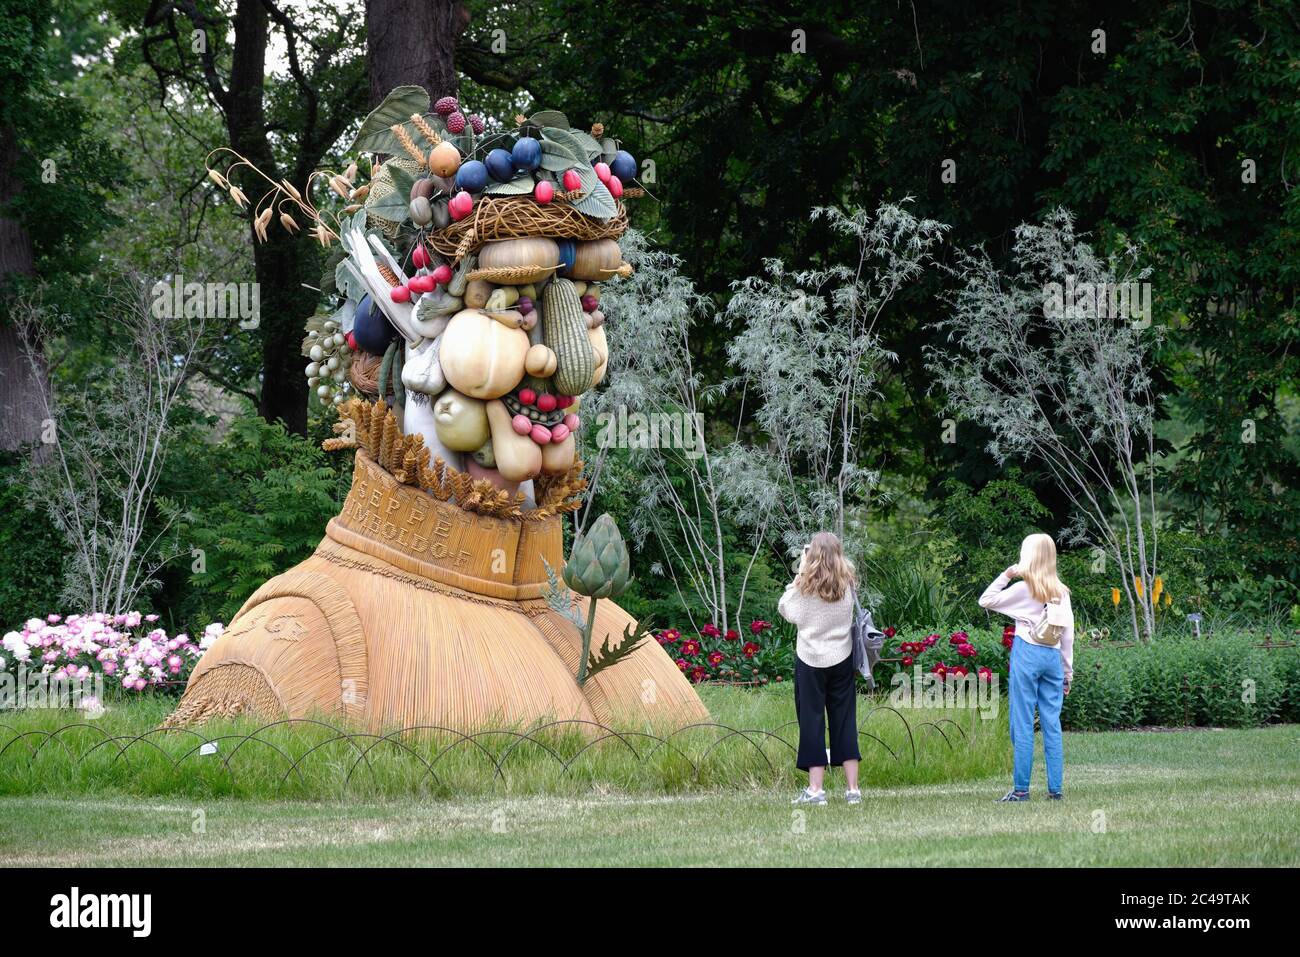 La grande sculpture de 'Summer' de l'artiste américain Philip Haas dans le style du peintre Giuseppe Arcimboldo exposé dans les jardins RHS Wisley Banque D'Images